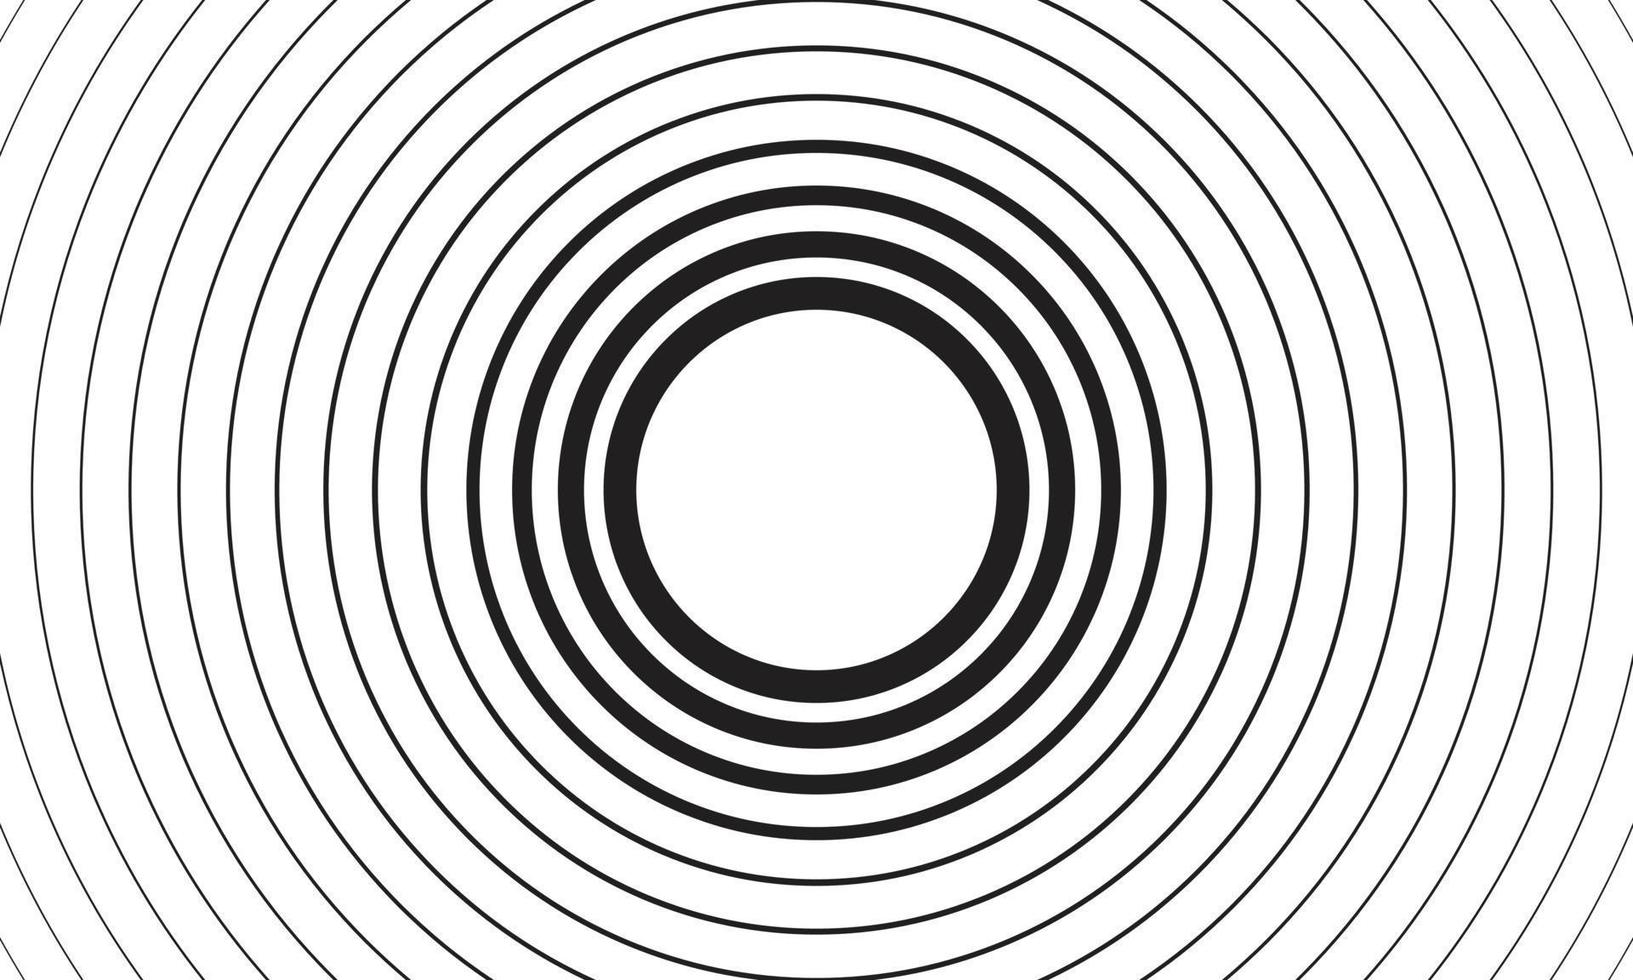 elemento geométrico radial. abstracto concéntrico, motivo geométrico radial fondo de círculo de línea concéntrica en blanco y negro. concepto de lavado y tormenta o ilustración vectorial simple del efecto dominó vector